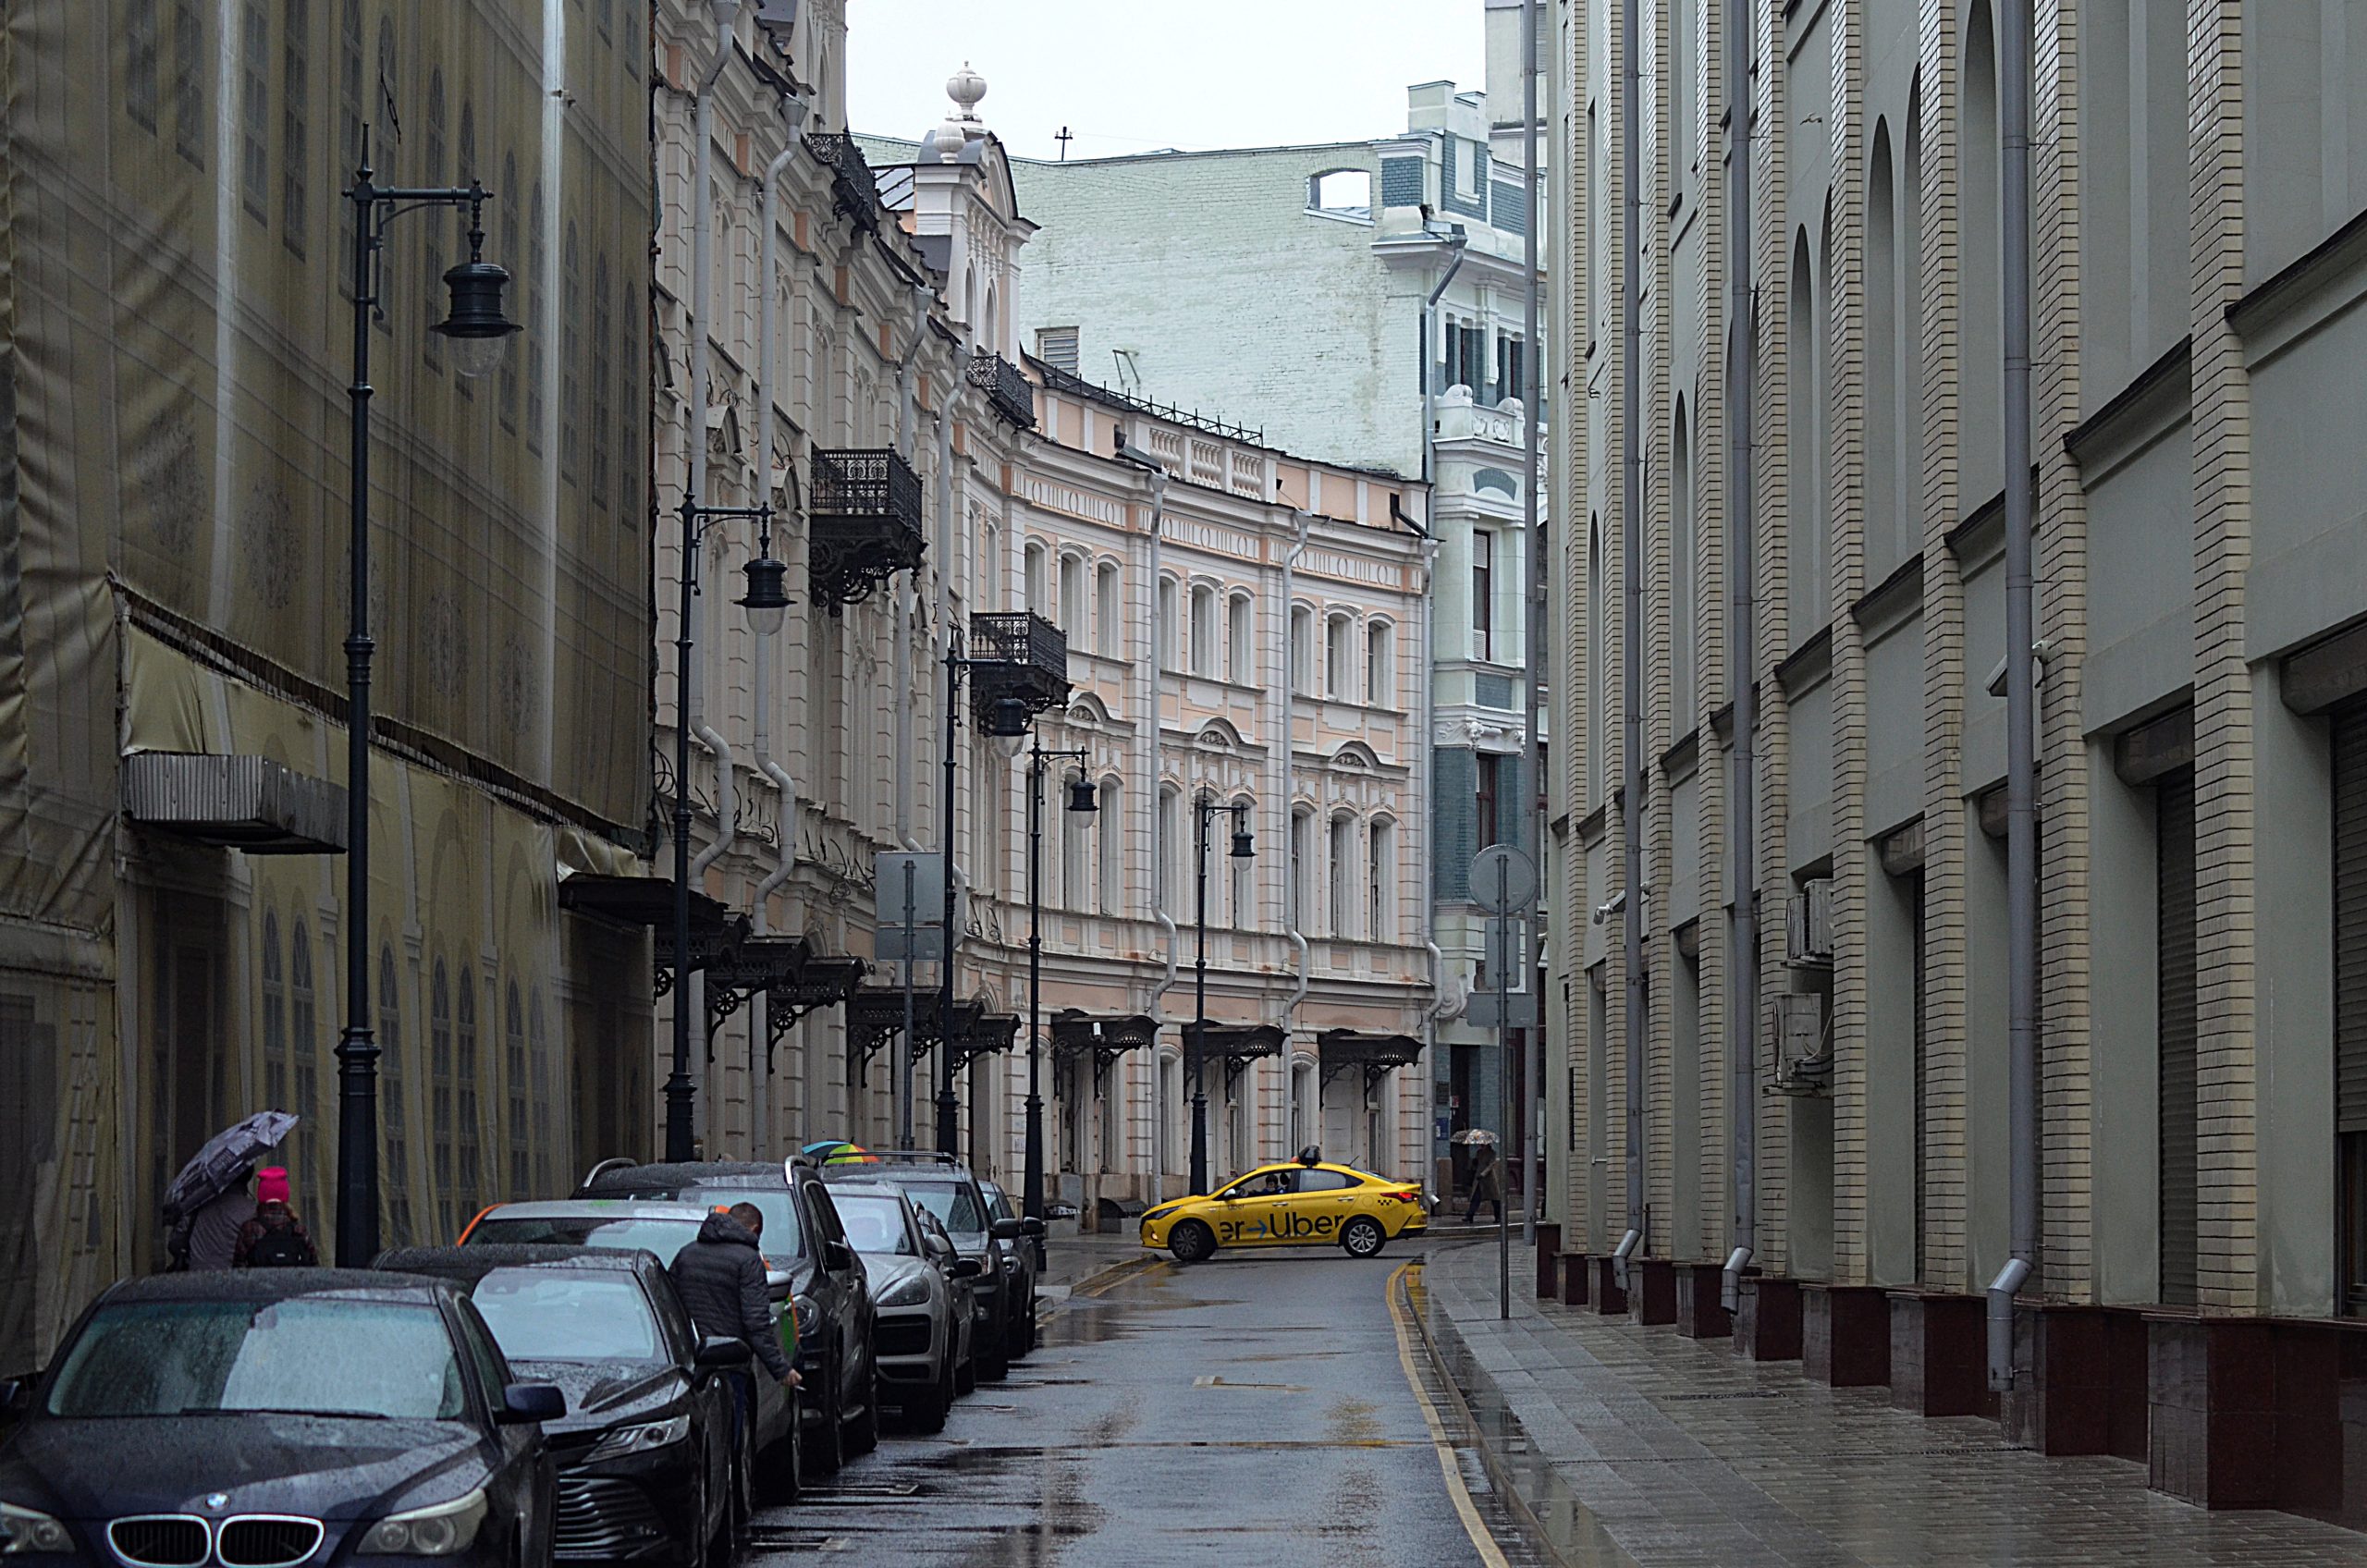 Бесплатные парковки будут функционировать в Москве во время ноябрьских праздников